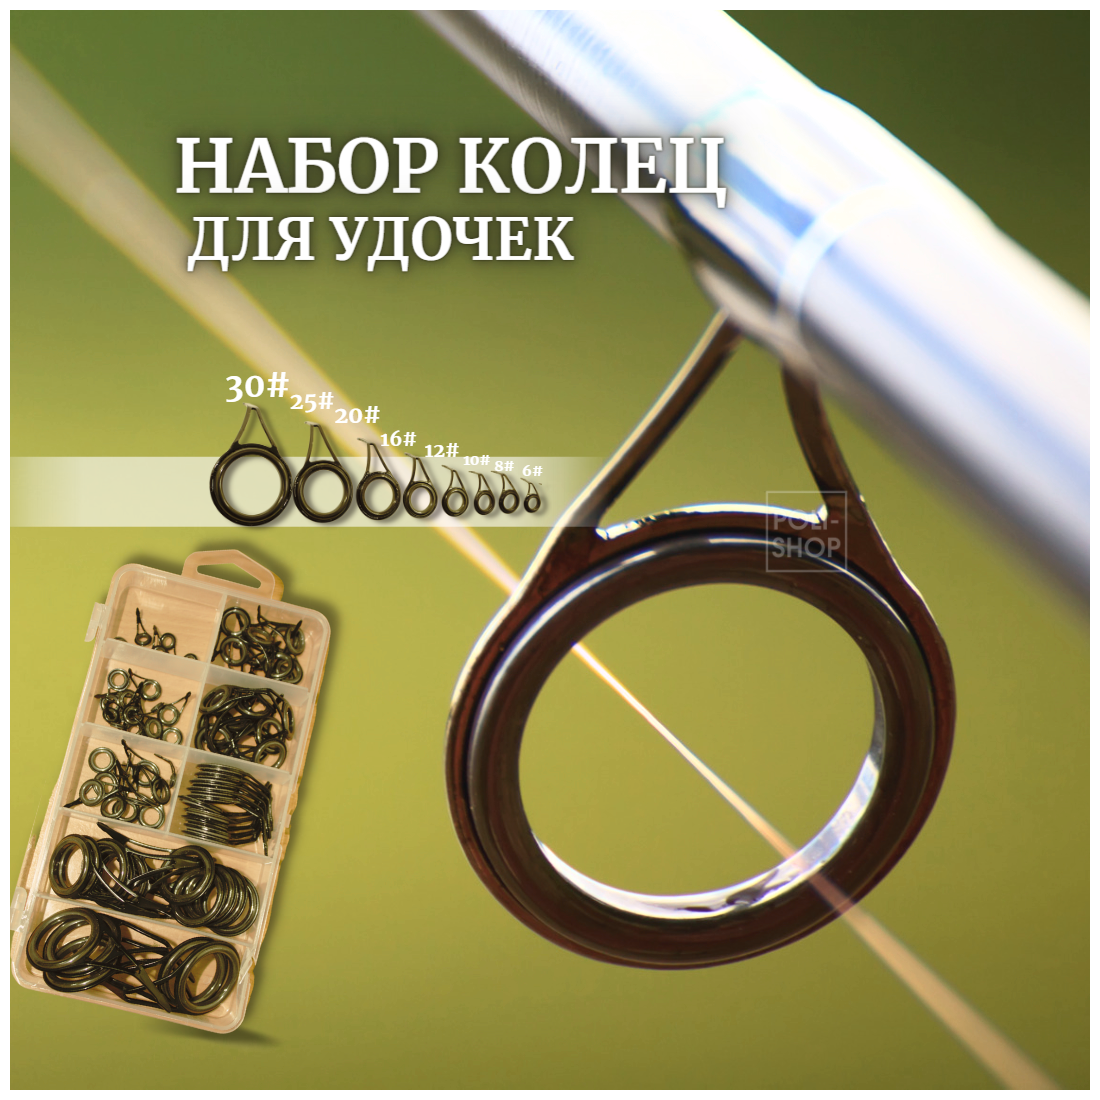 Кольца для удочек / Кольца для спиннинга / Комплект колец для рыбалки OSTSG 75 штук от 0.6 см до 3 см коричневые